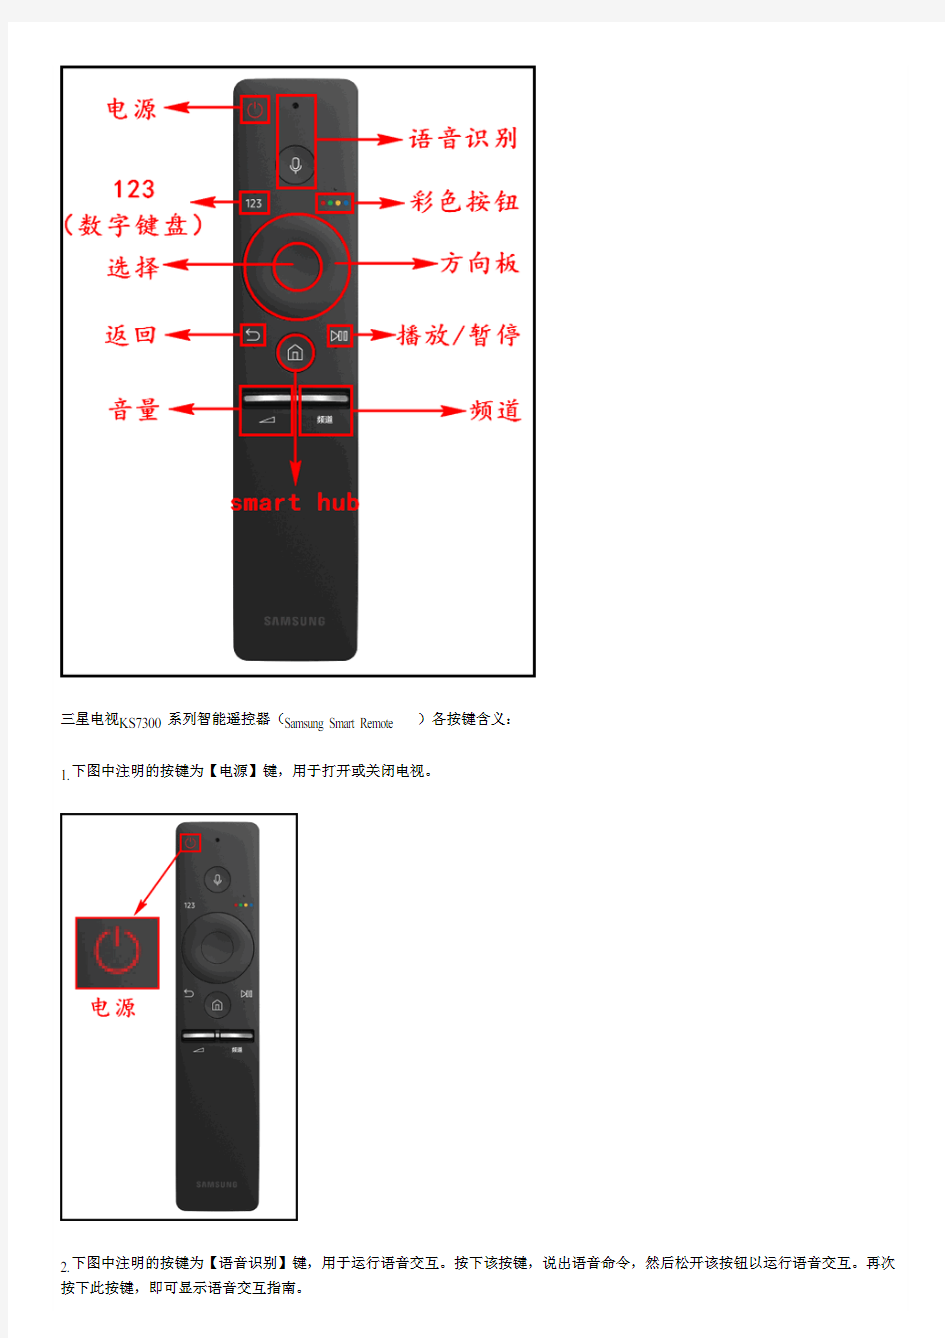 KS7300系列(UA49KS7300JXXZ、UA55KS7300JXXZ)电视智能遥控器(Samsung Smart Remote)介绍